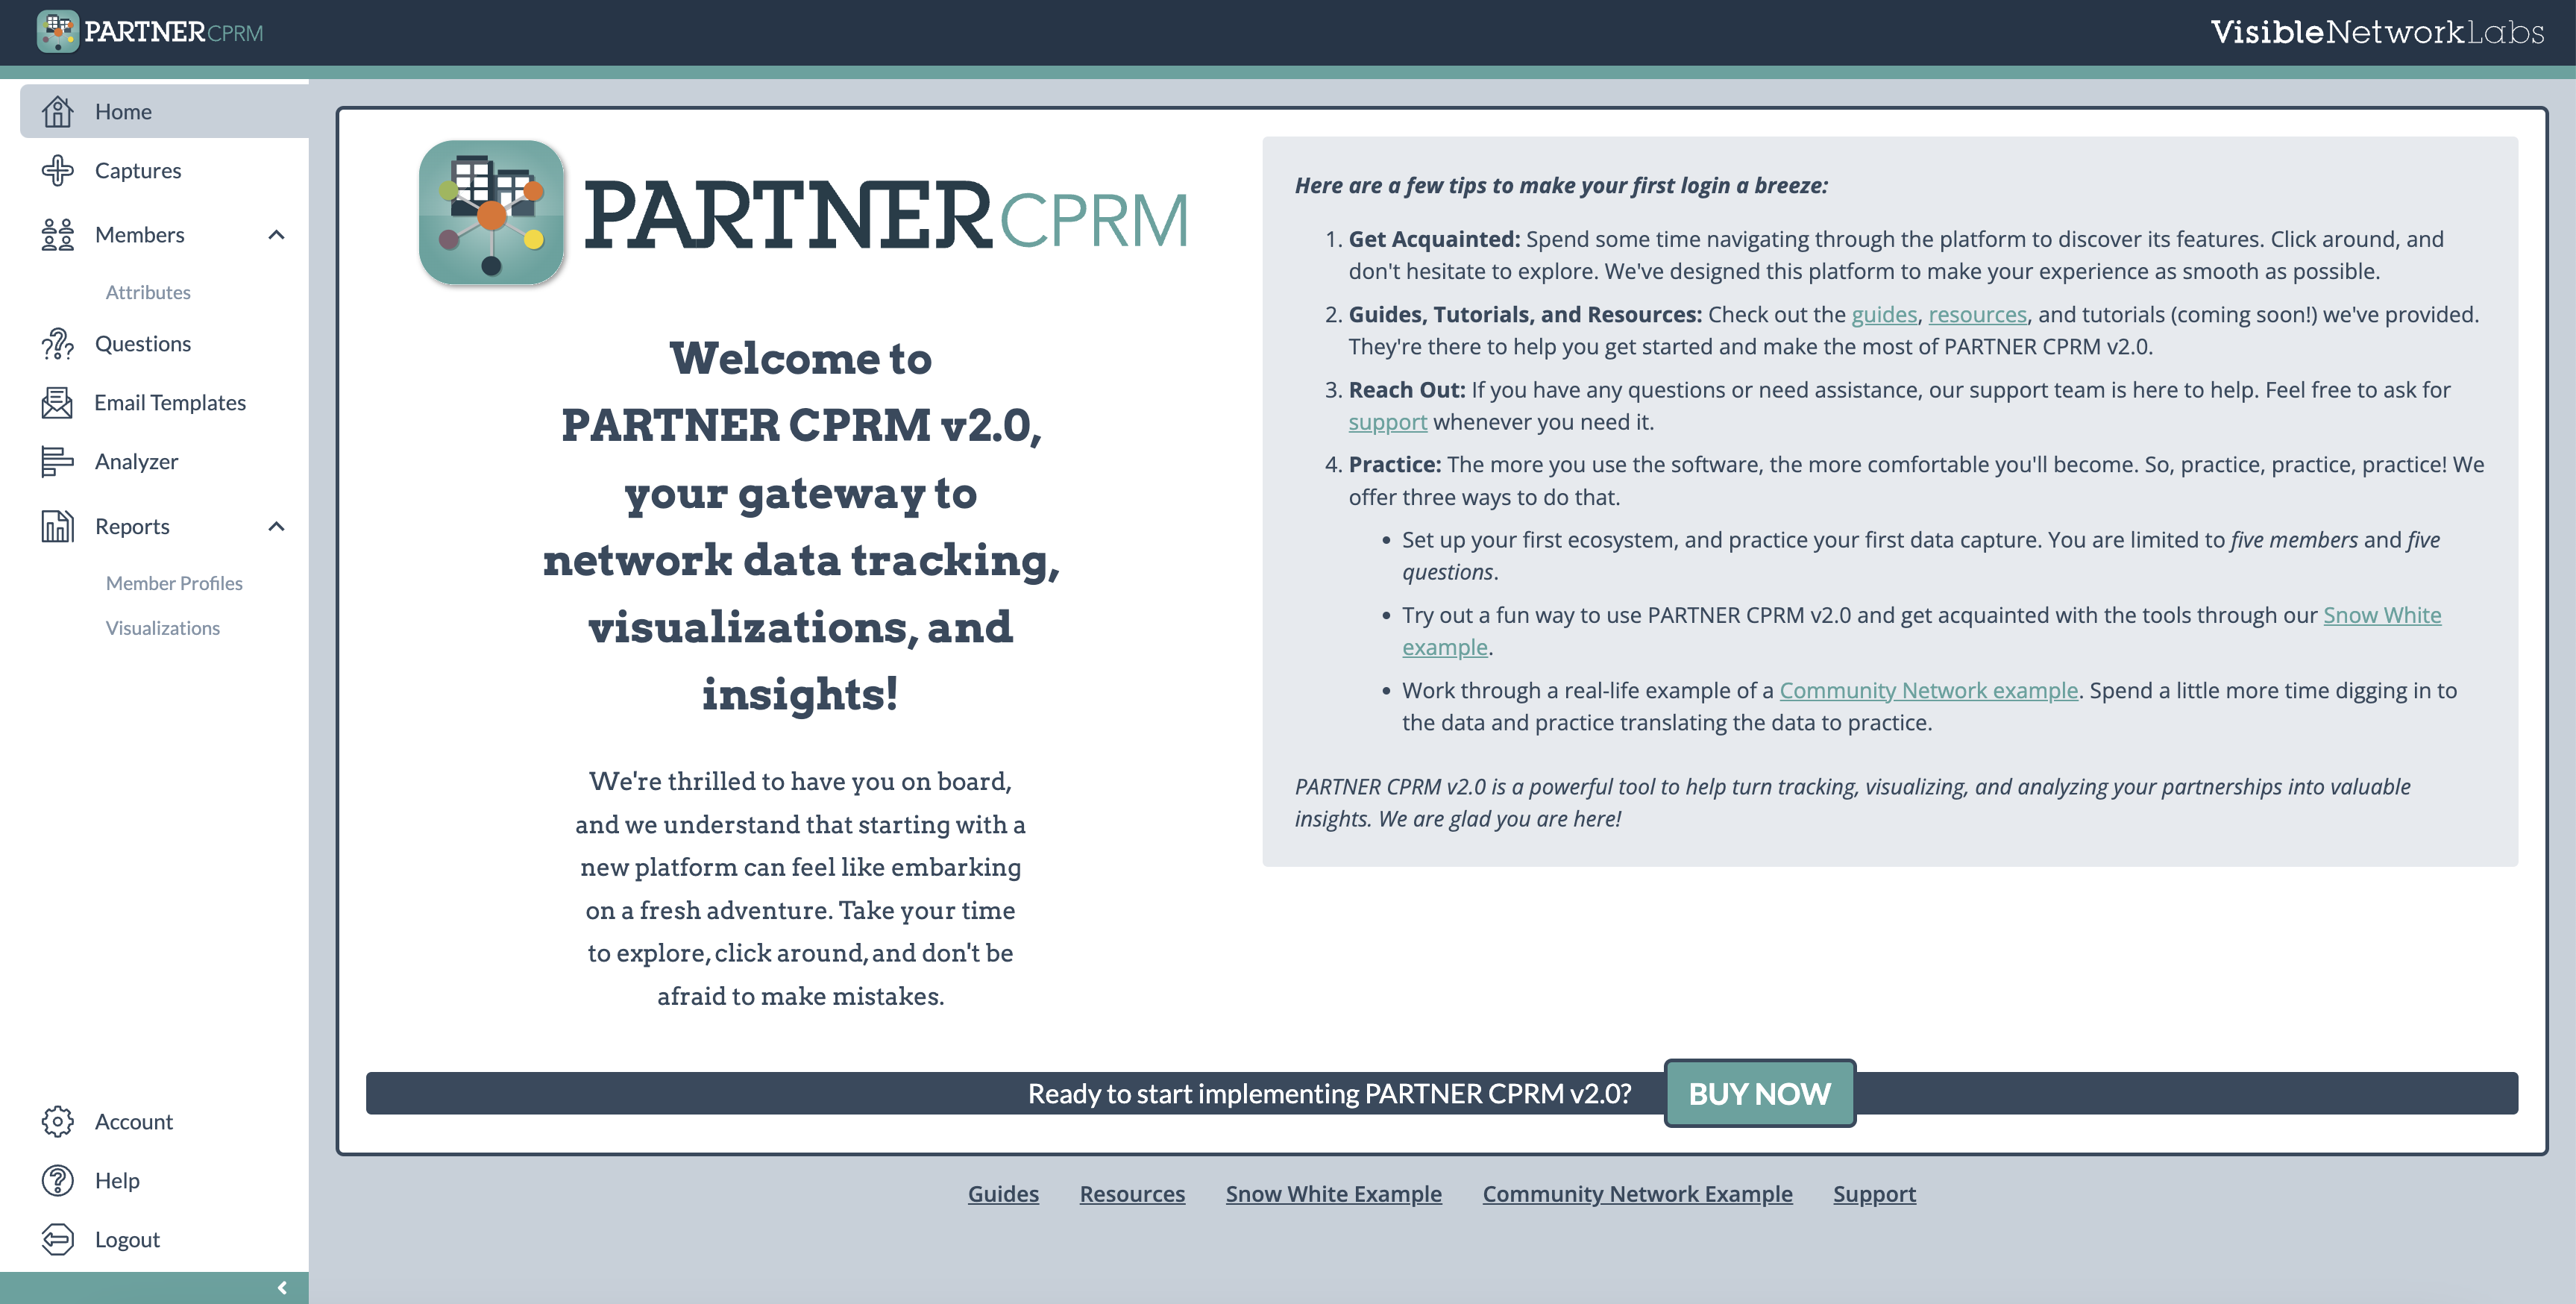 PARTNER CPRM Homepage